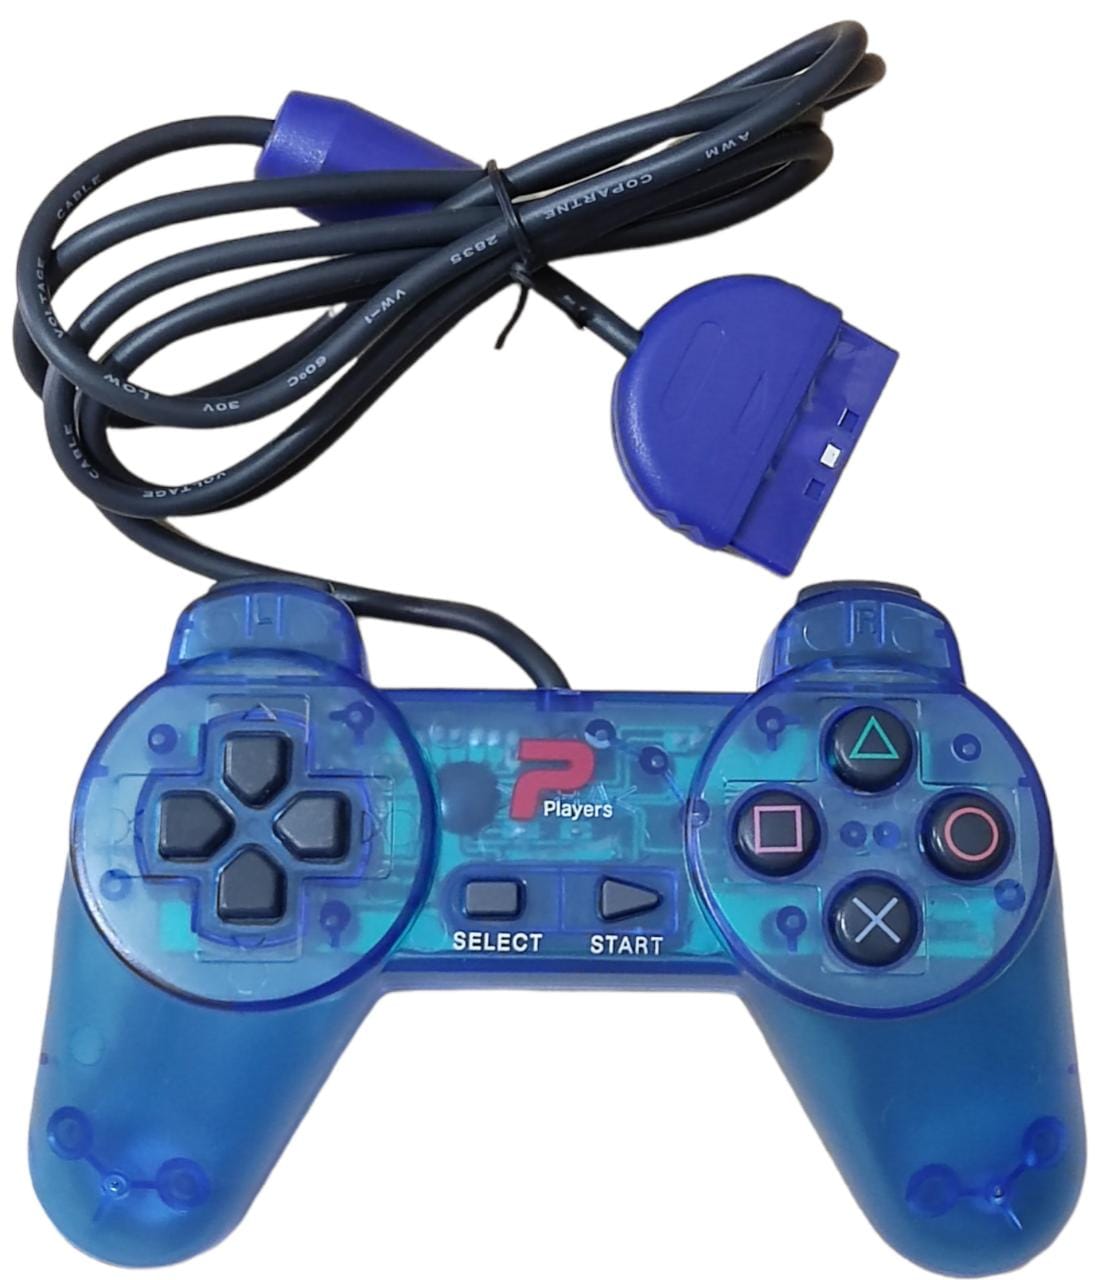 Controle Joystick Compatível com Playstation 1 Ps1 com fio - PG